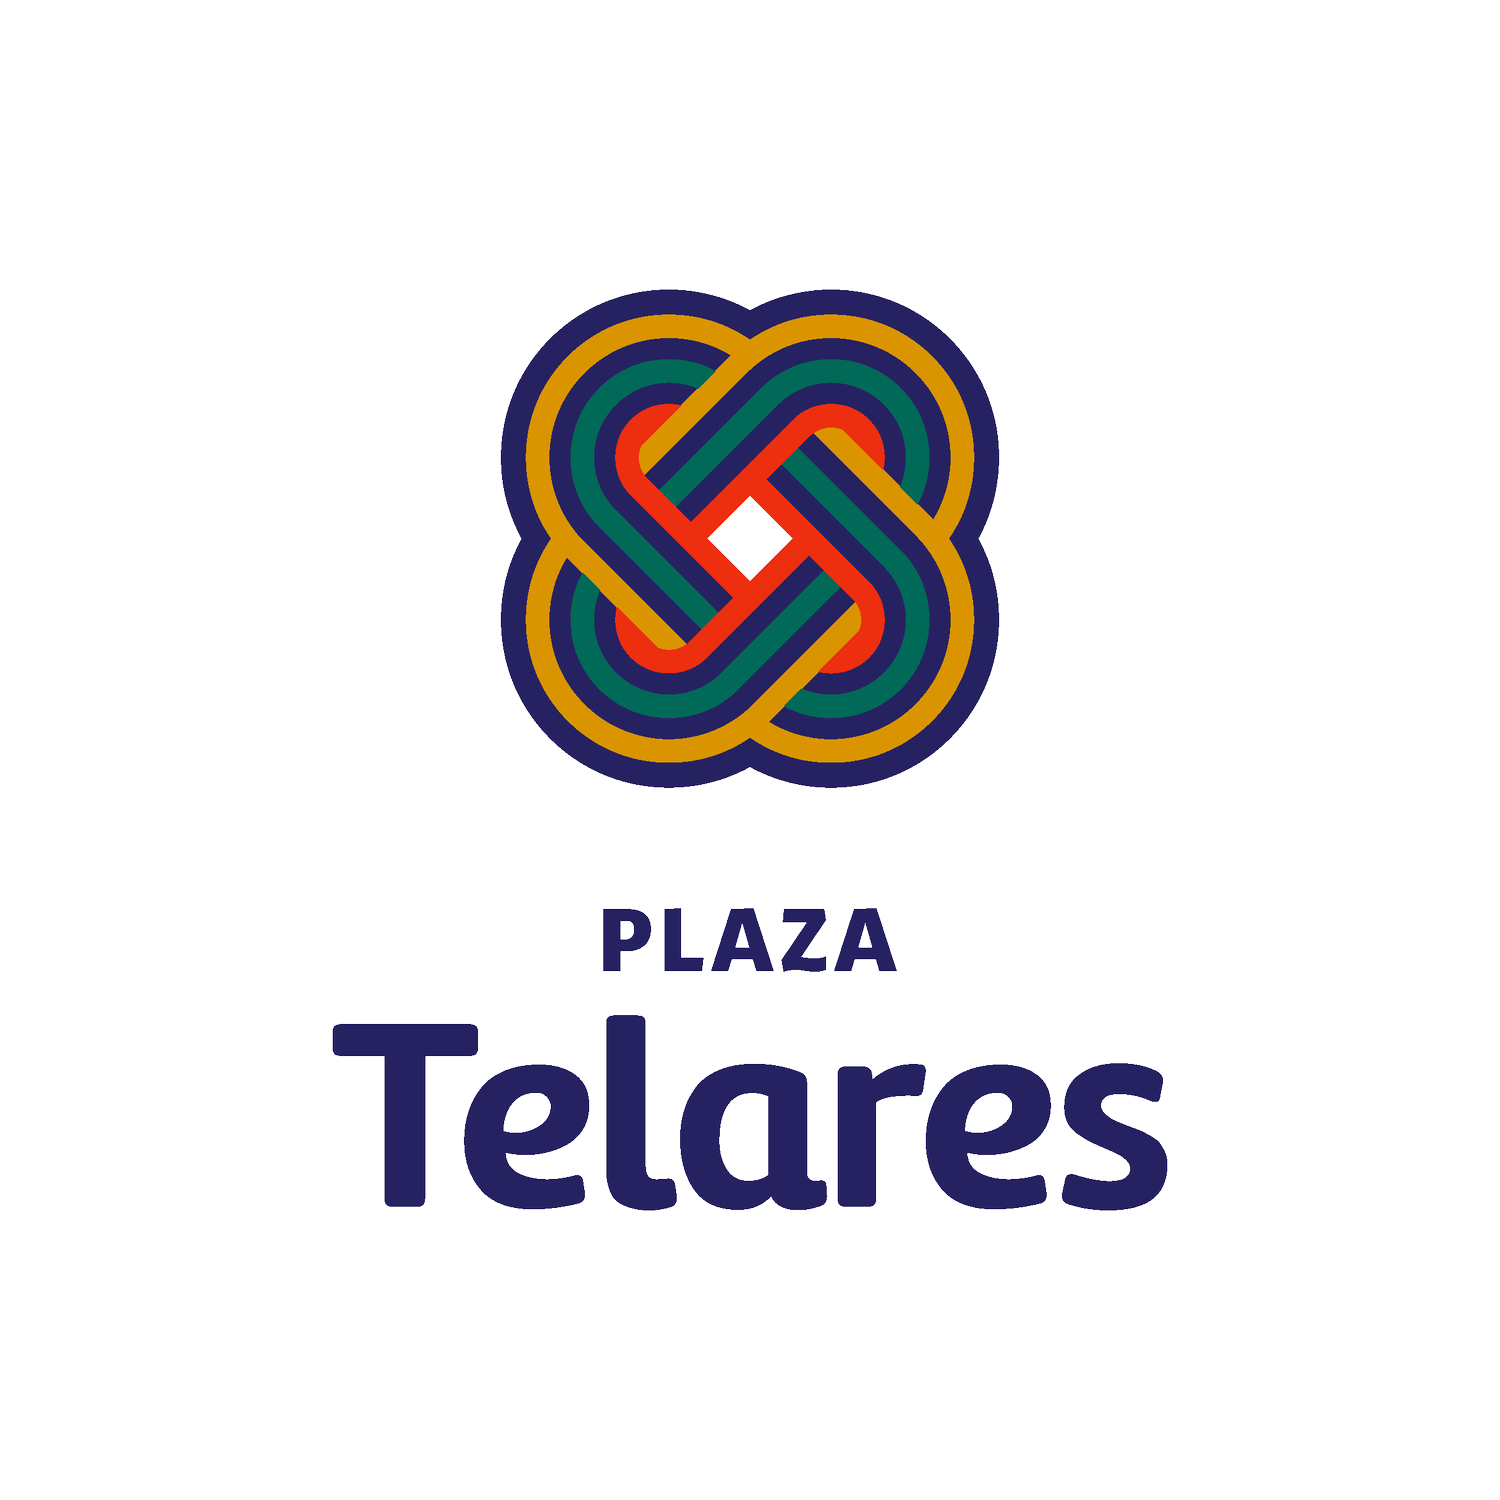 Plaza Telares